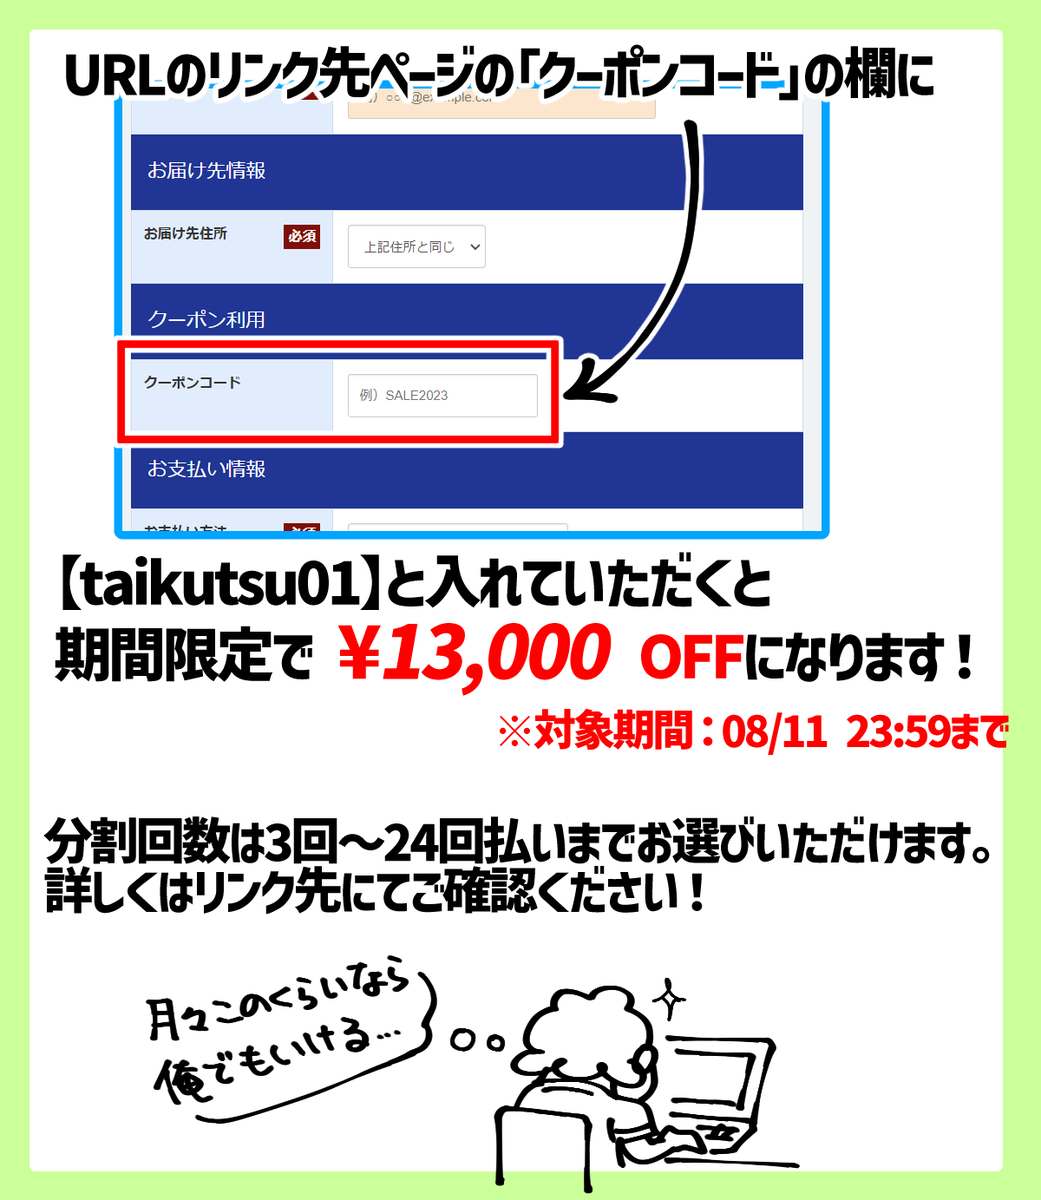 (2/2) #PR #loofen 下記URLのリンク先にある「クーポンコード」の欄に【taikutsu01】と入れて頂くと08/11 23:59までの期間限定で13,000円OFFとなります! 対象期間が間もなく終わってしまう感じで恐縮ですがご興味ございましたらこの機会に是非!! https://trc.a-msp.jp/ad/p/r?medium=19&ad=131&creative=452